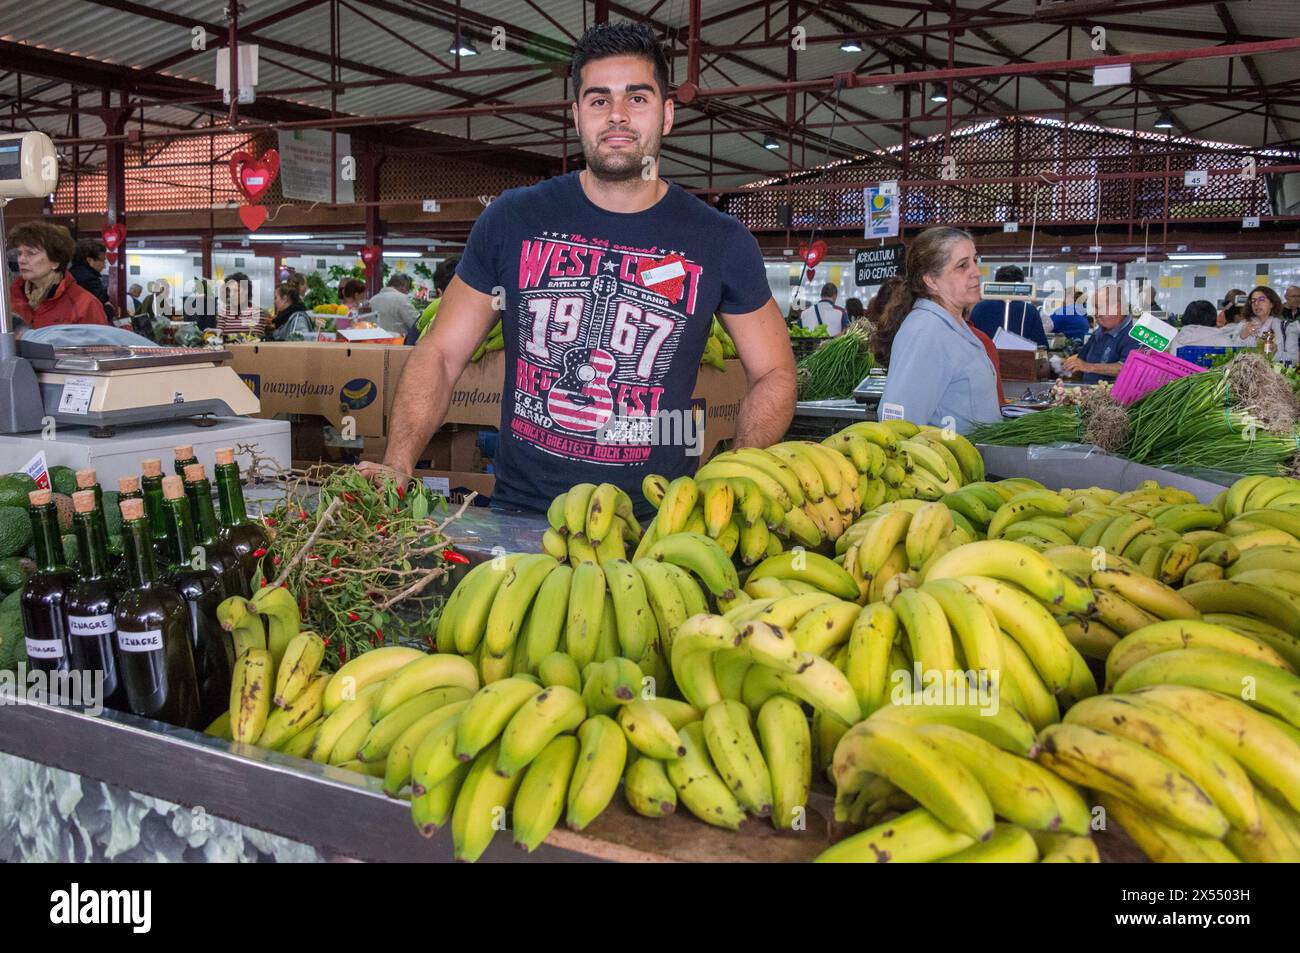 Giovane in una stalla che vende frutta, con banane, in un mercato agricolo nel comune di Tacoronte Foto Stock